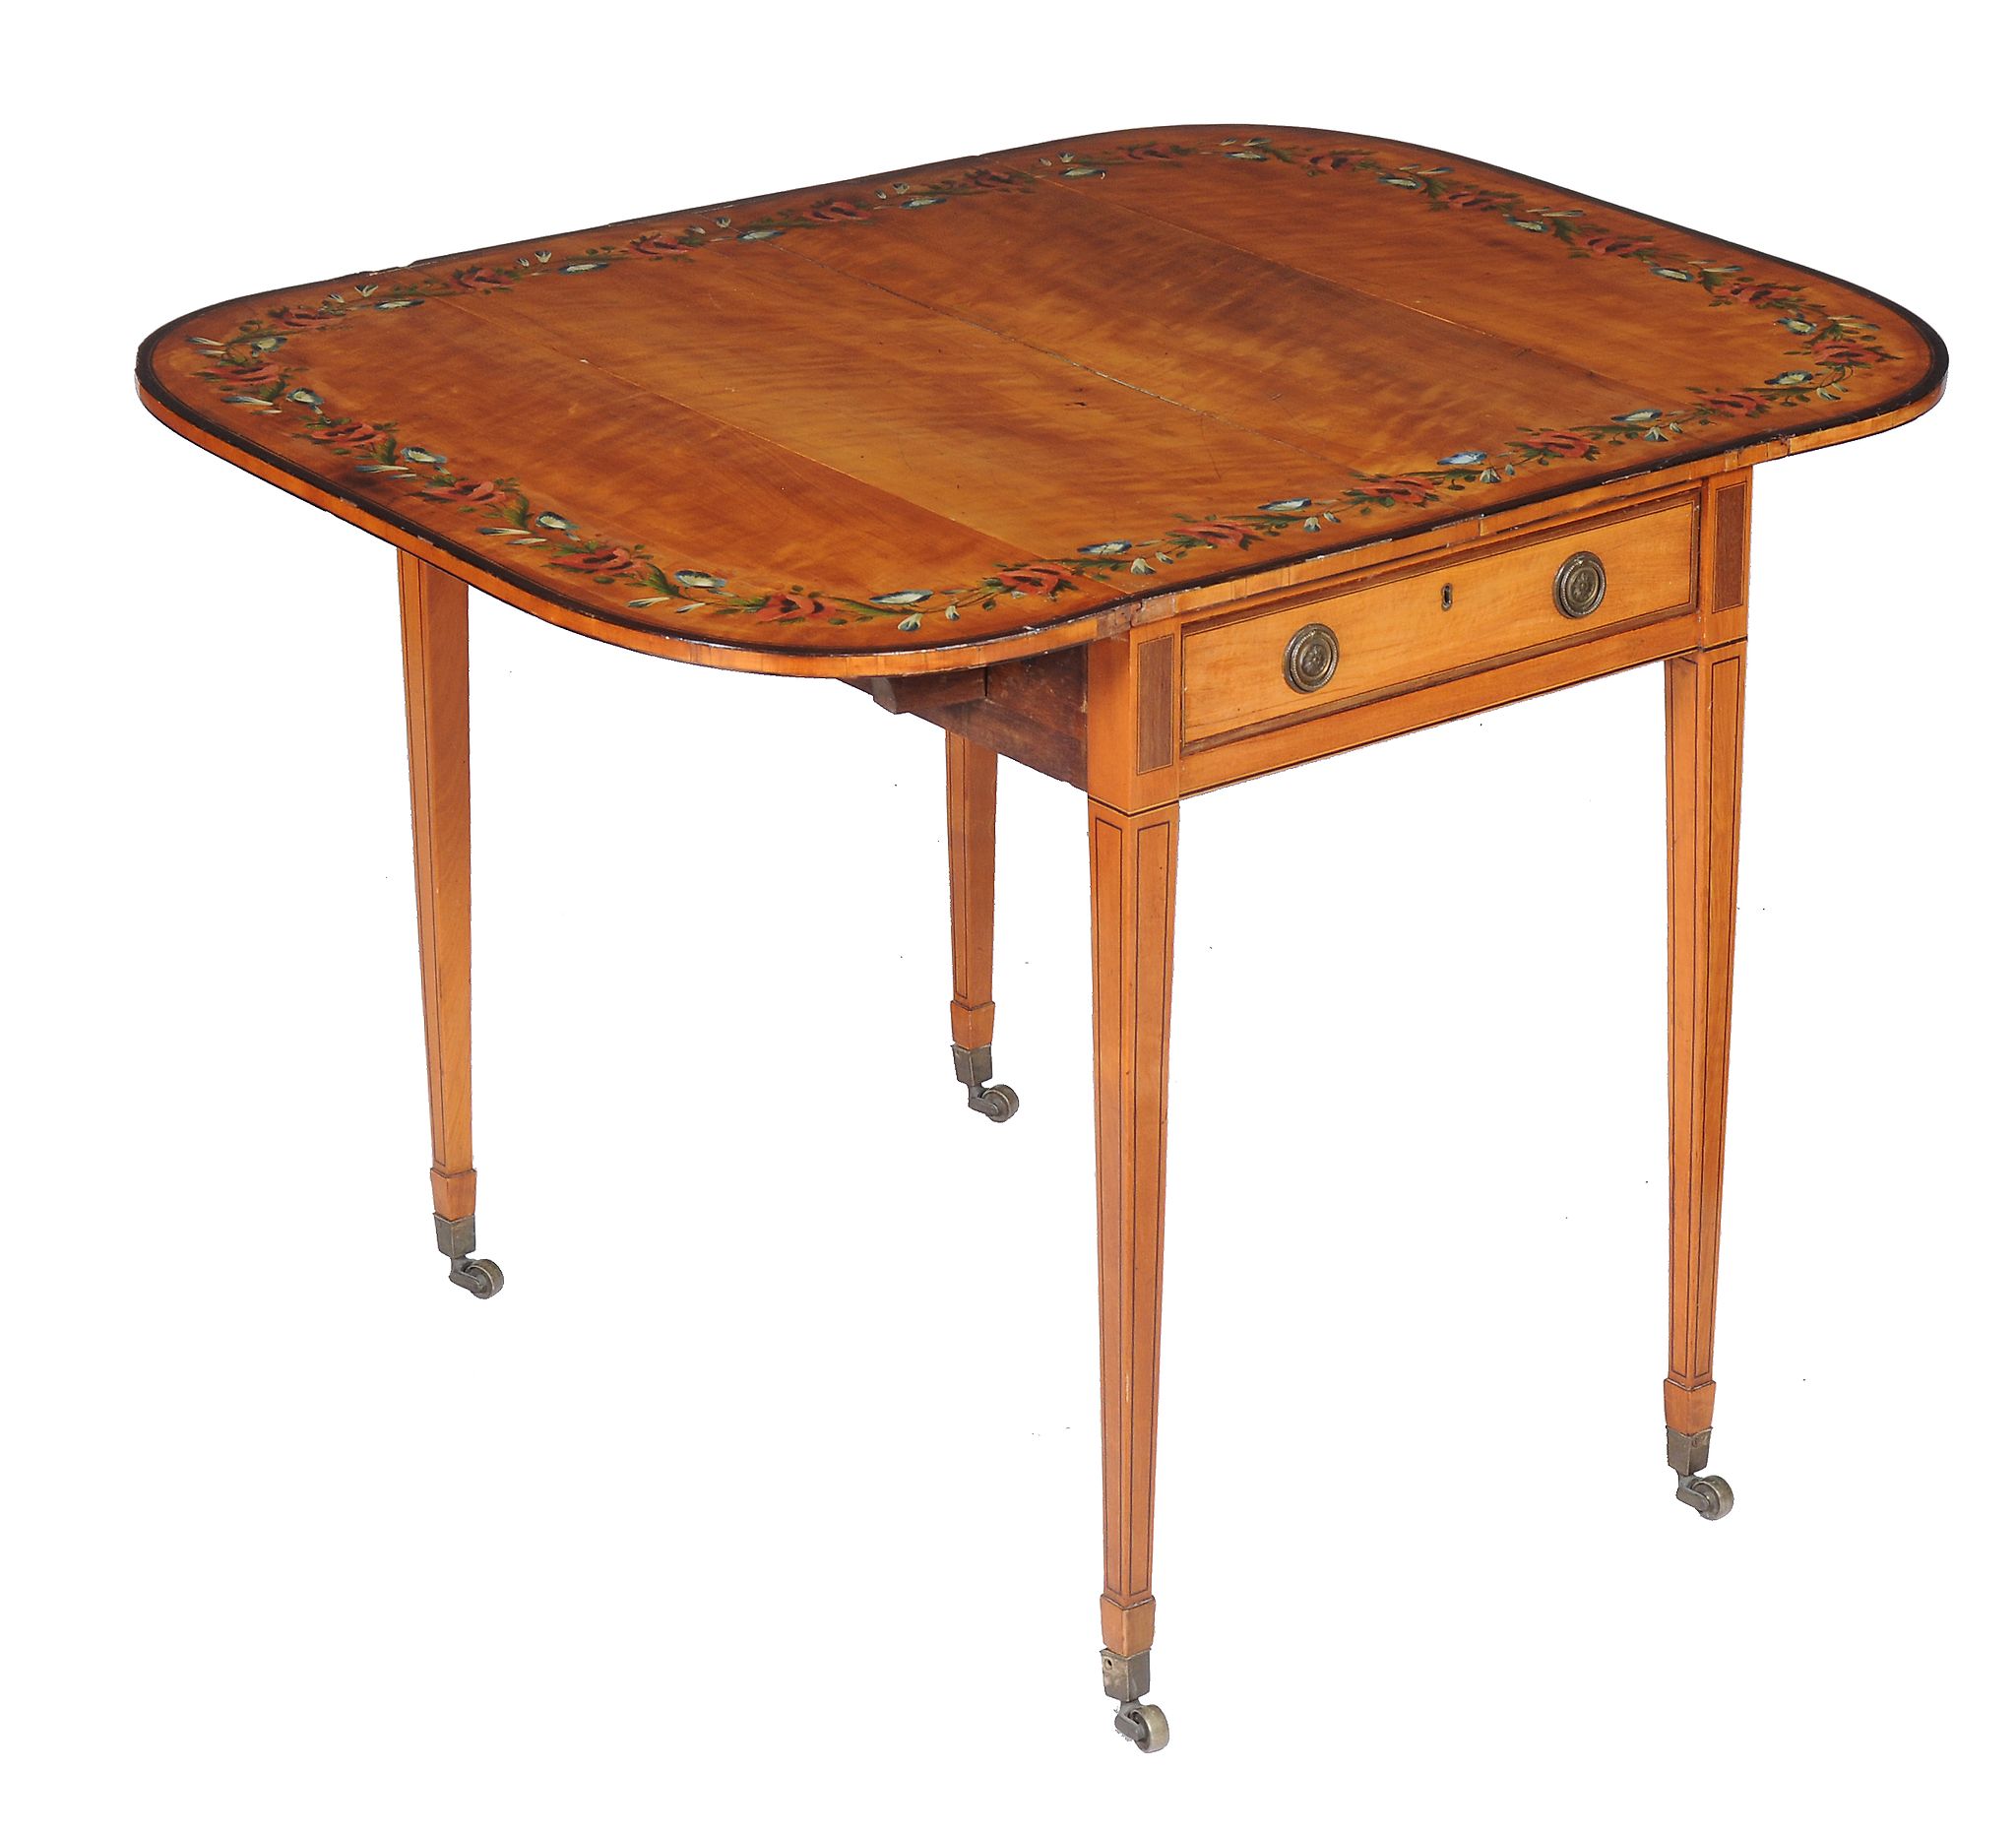 Ω A George III satinwood and rosewood banded Pembroke table in the manner of Thomas Sheraton, with